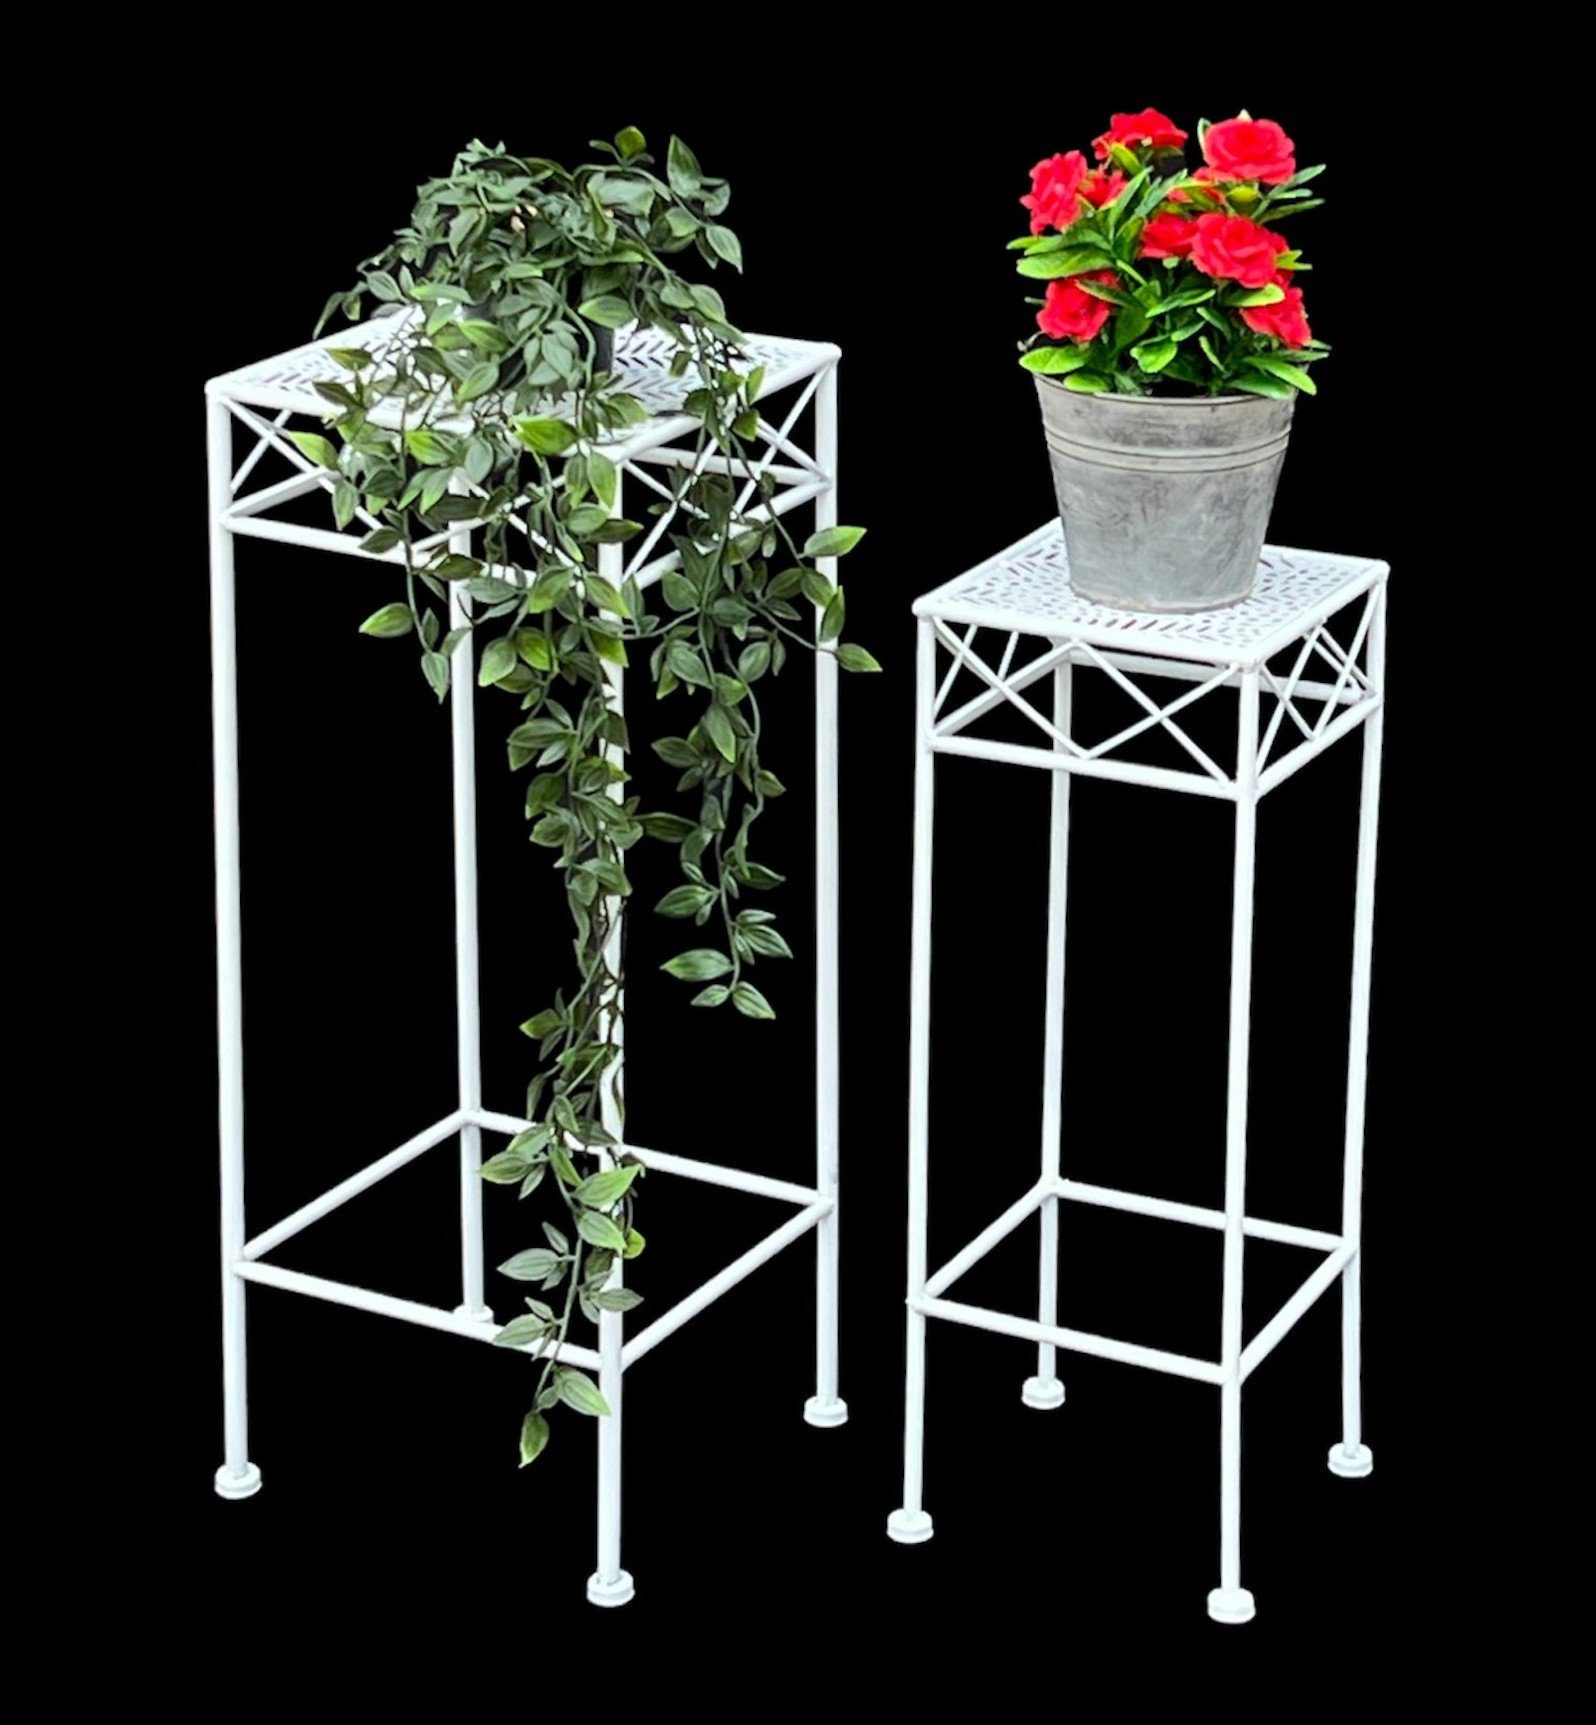 DanDiBo Blumenständer Blumenhocker Weiß Metall 2er Set Eckig Beistelltisch Blumenständer